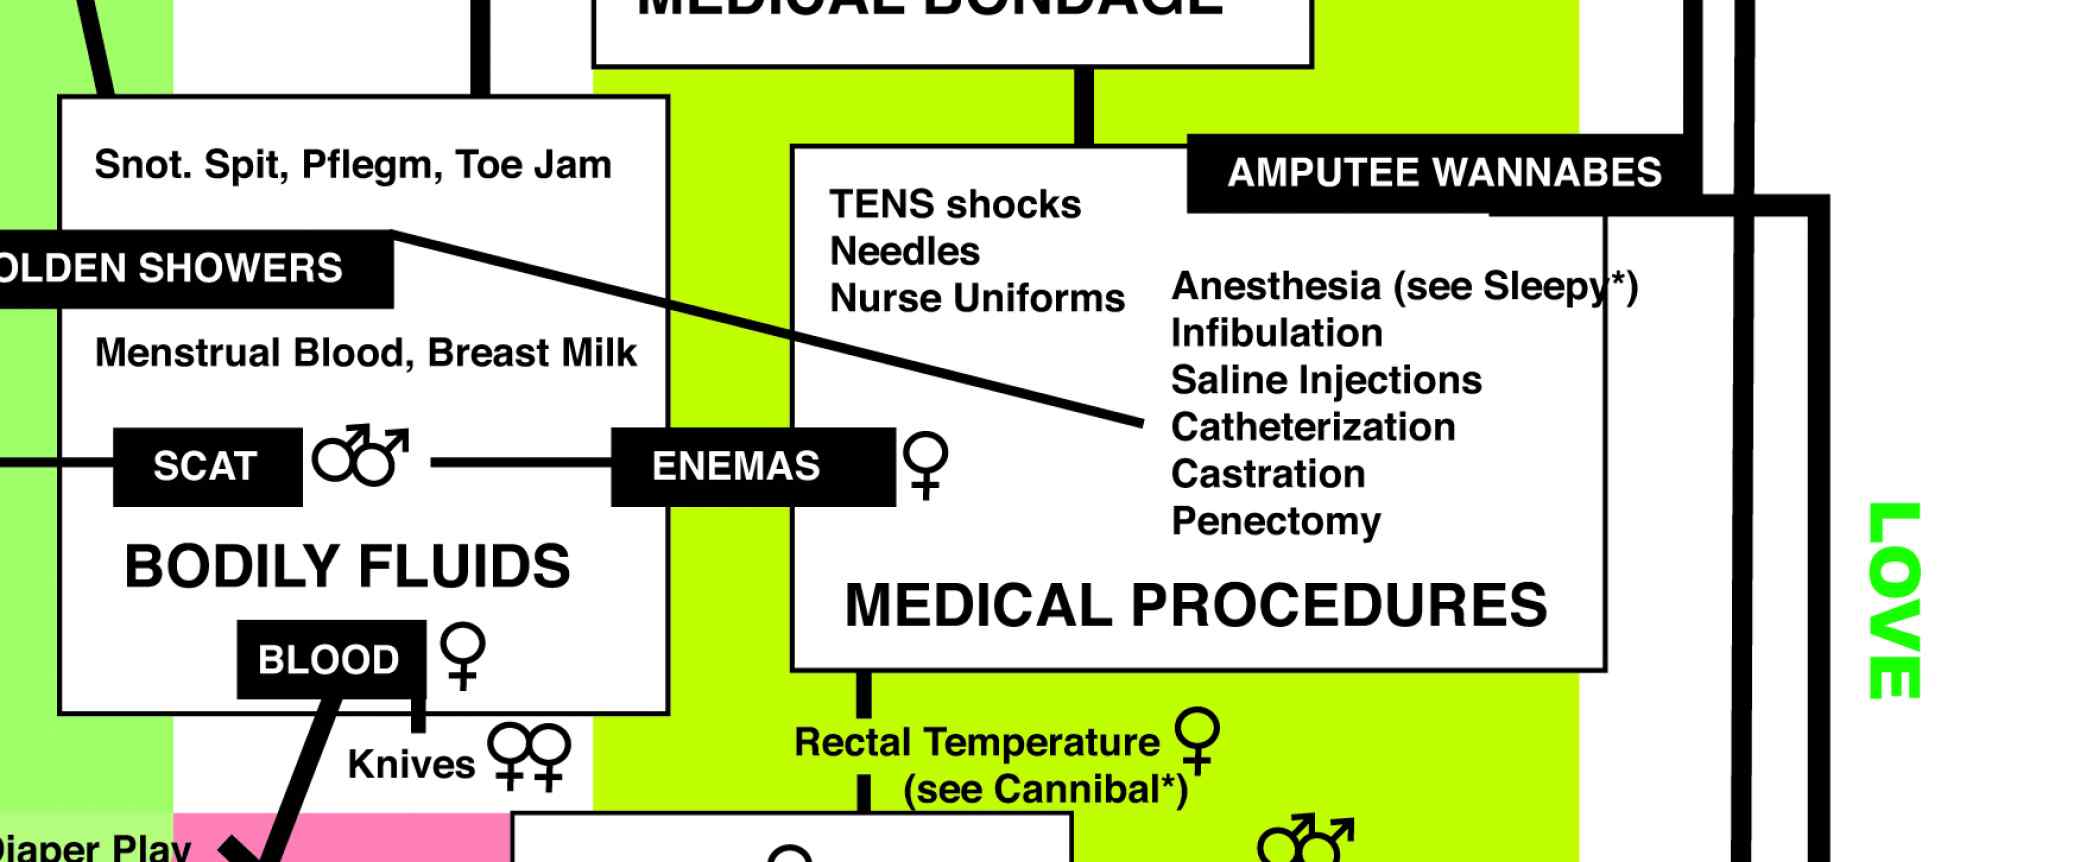 Medical Procedures